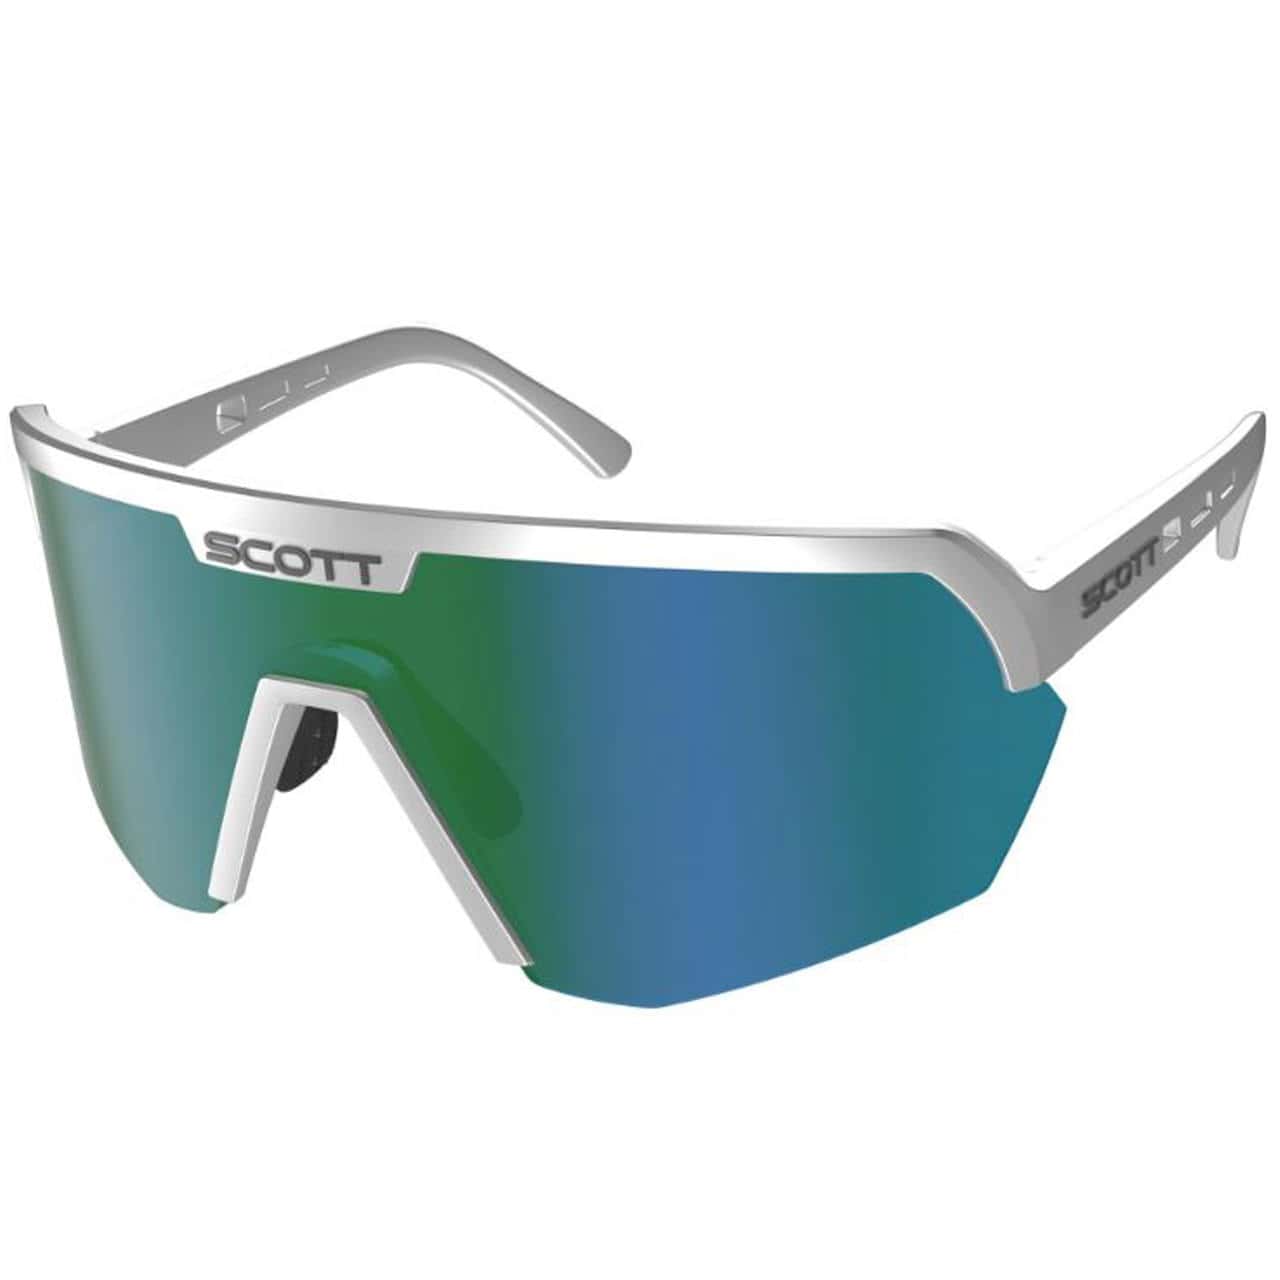 Scott Sport Shield Supersonic Edt. Sunglasses silver/green chrome